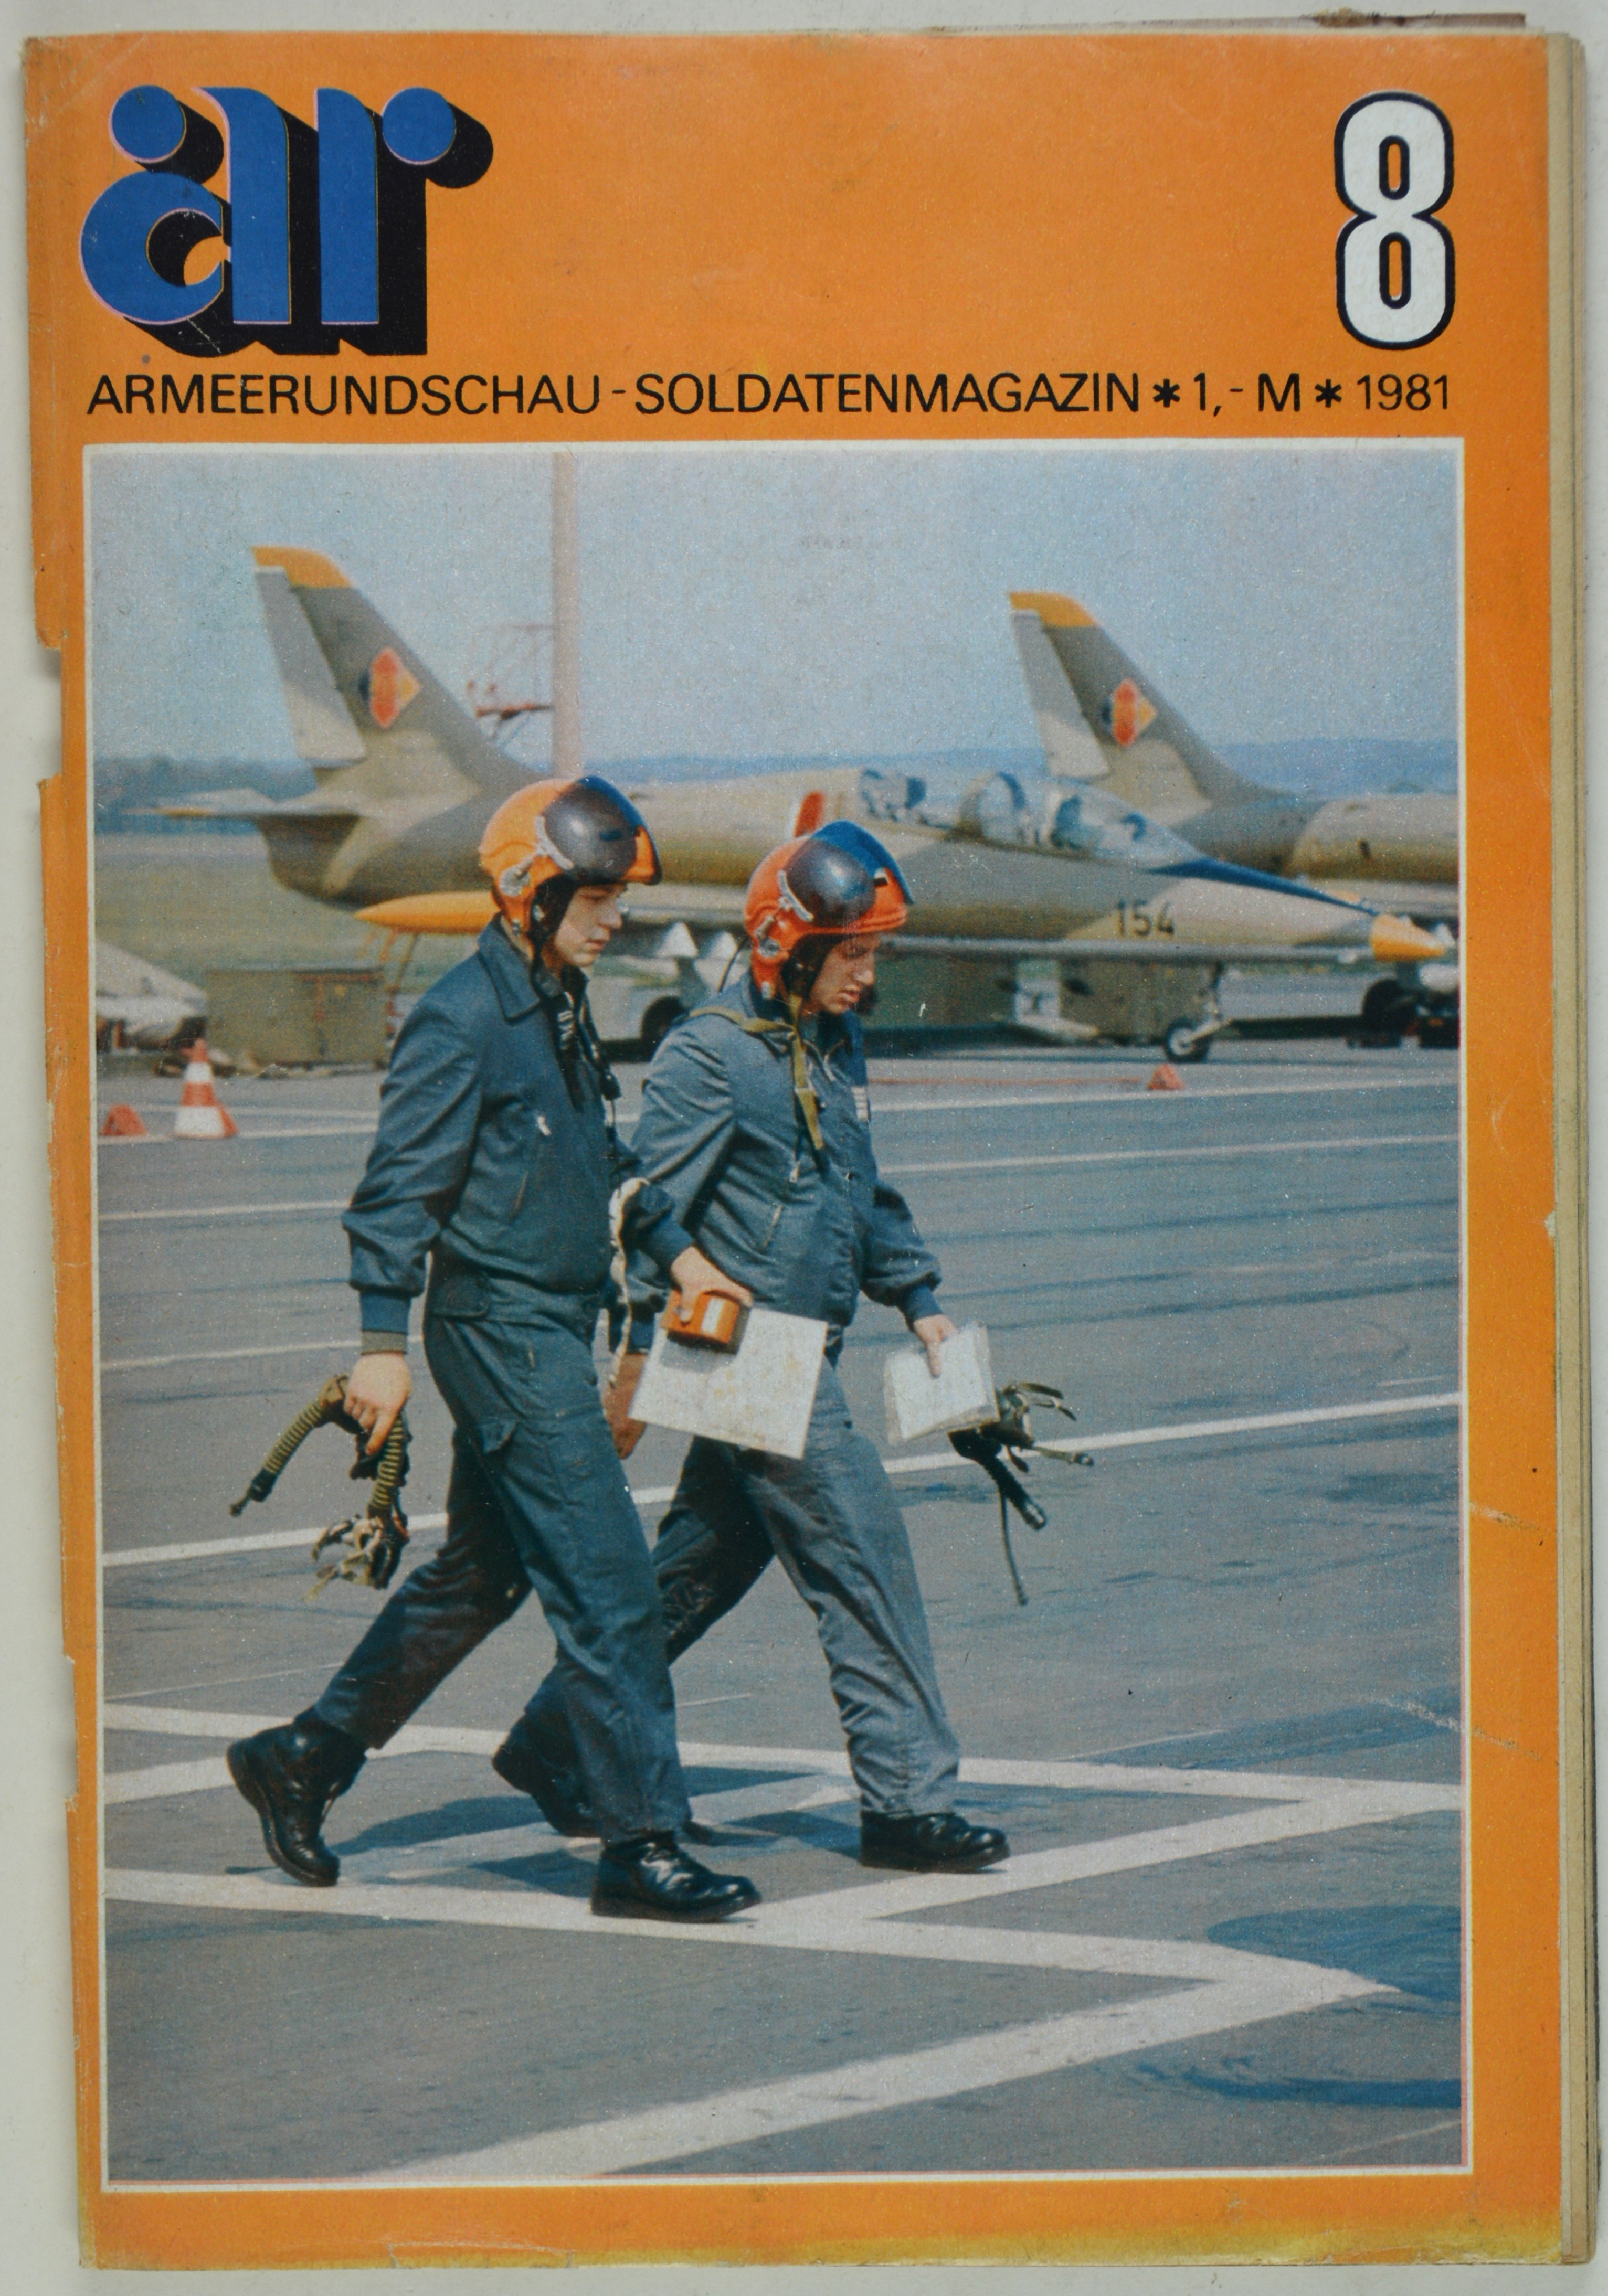 Armeerundschau - Soldatenmagazin (1981), Heft 8 (DDR Geschichtsmuseum im Dokumentationszentrum Perleberg CC BY-SA)